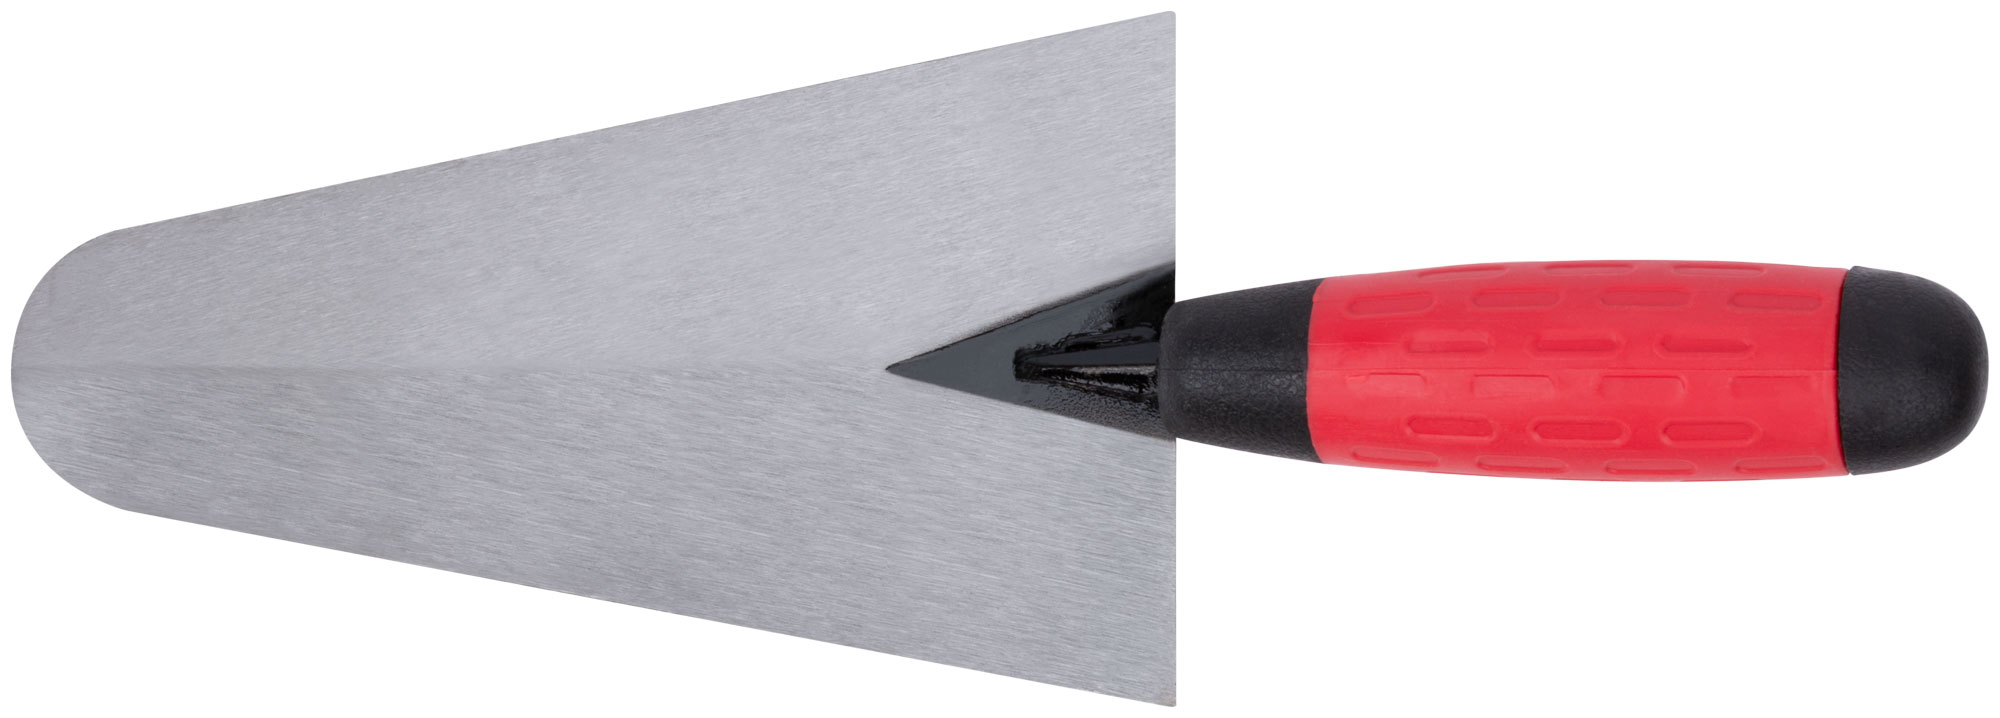 Мастерок бетонщика, прорезиненная ручка 180 мм